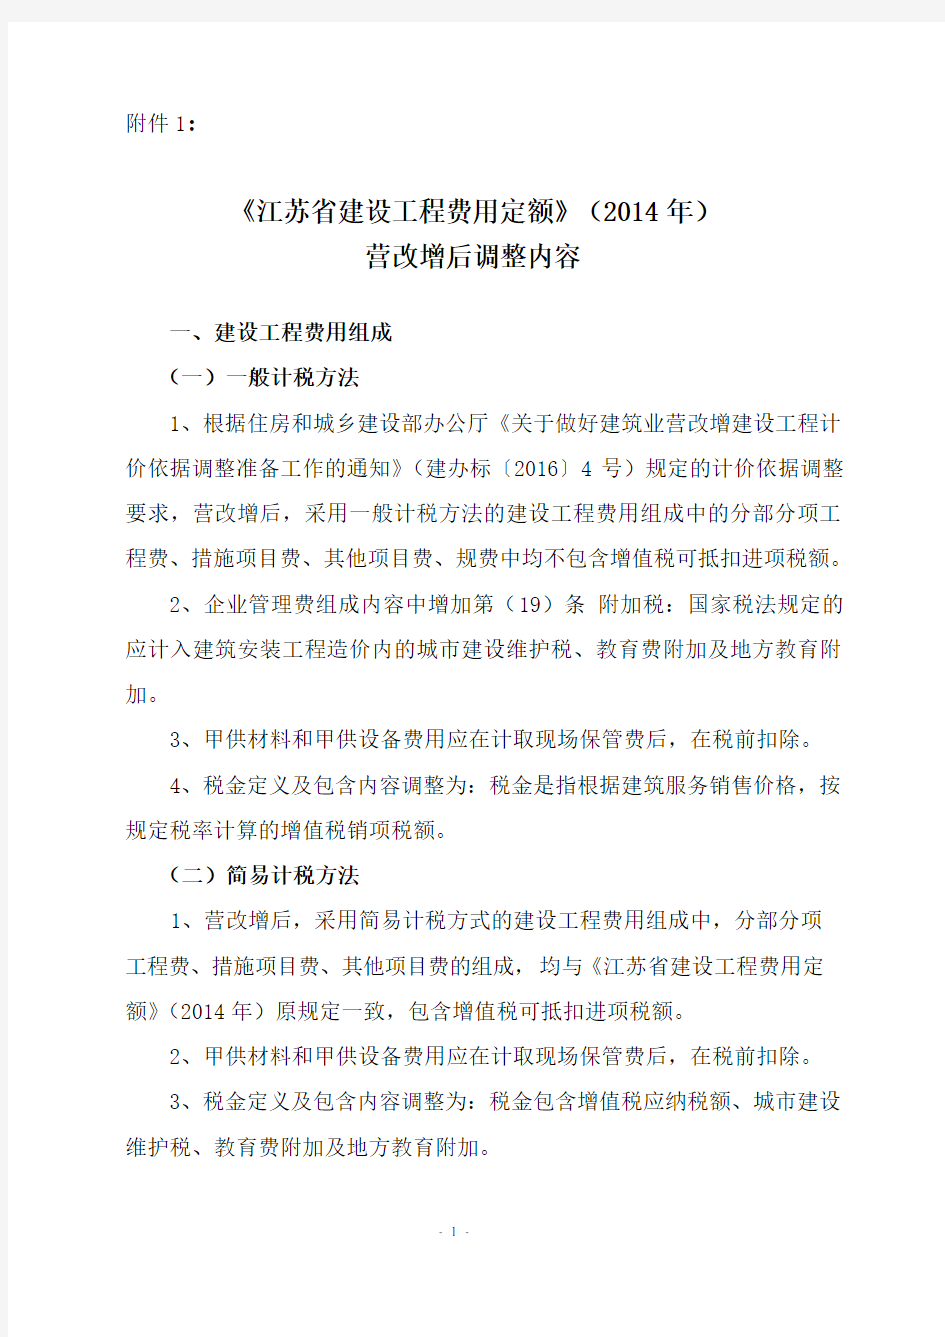 附1《江苏省建设工程费用定额》(2014)年营改增后调整内容